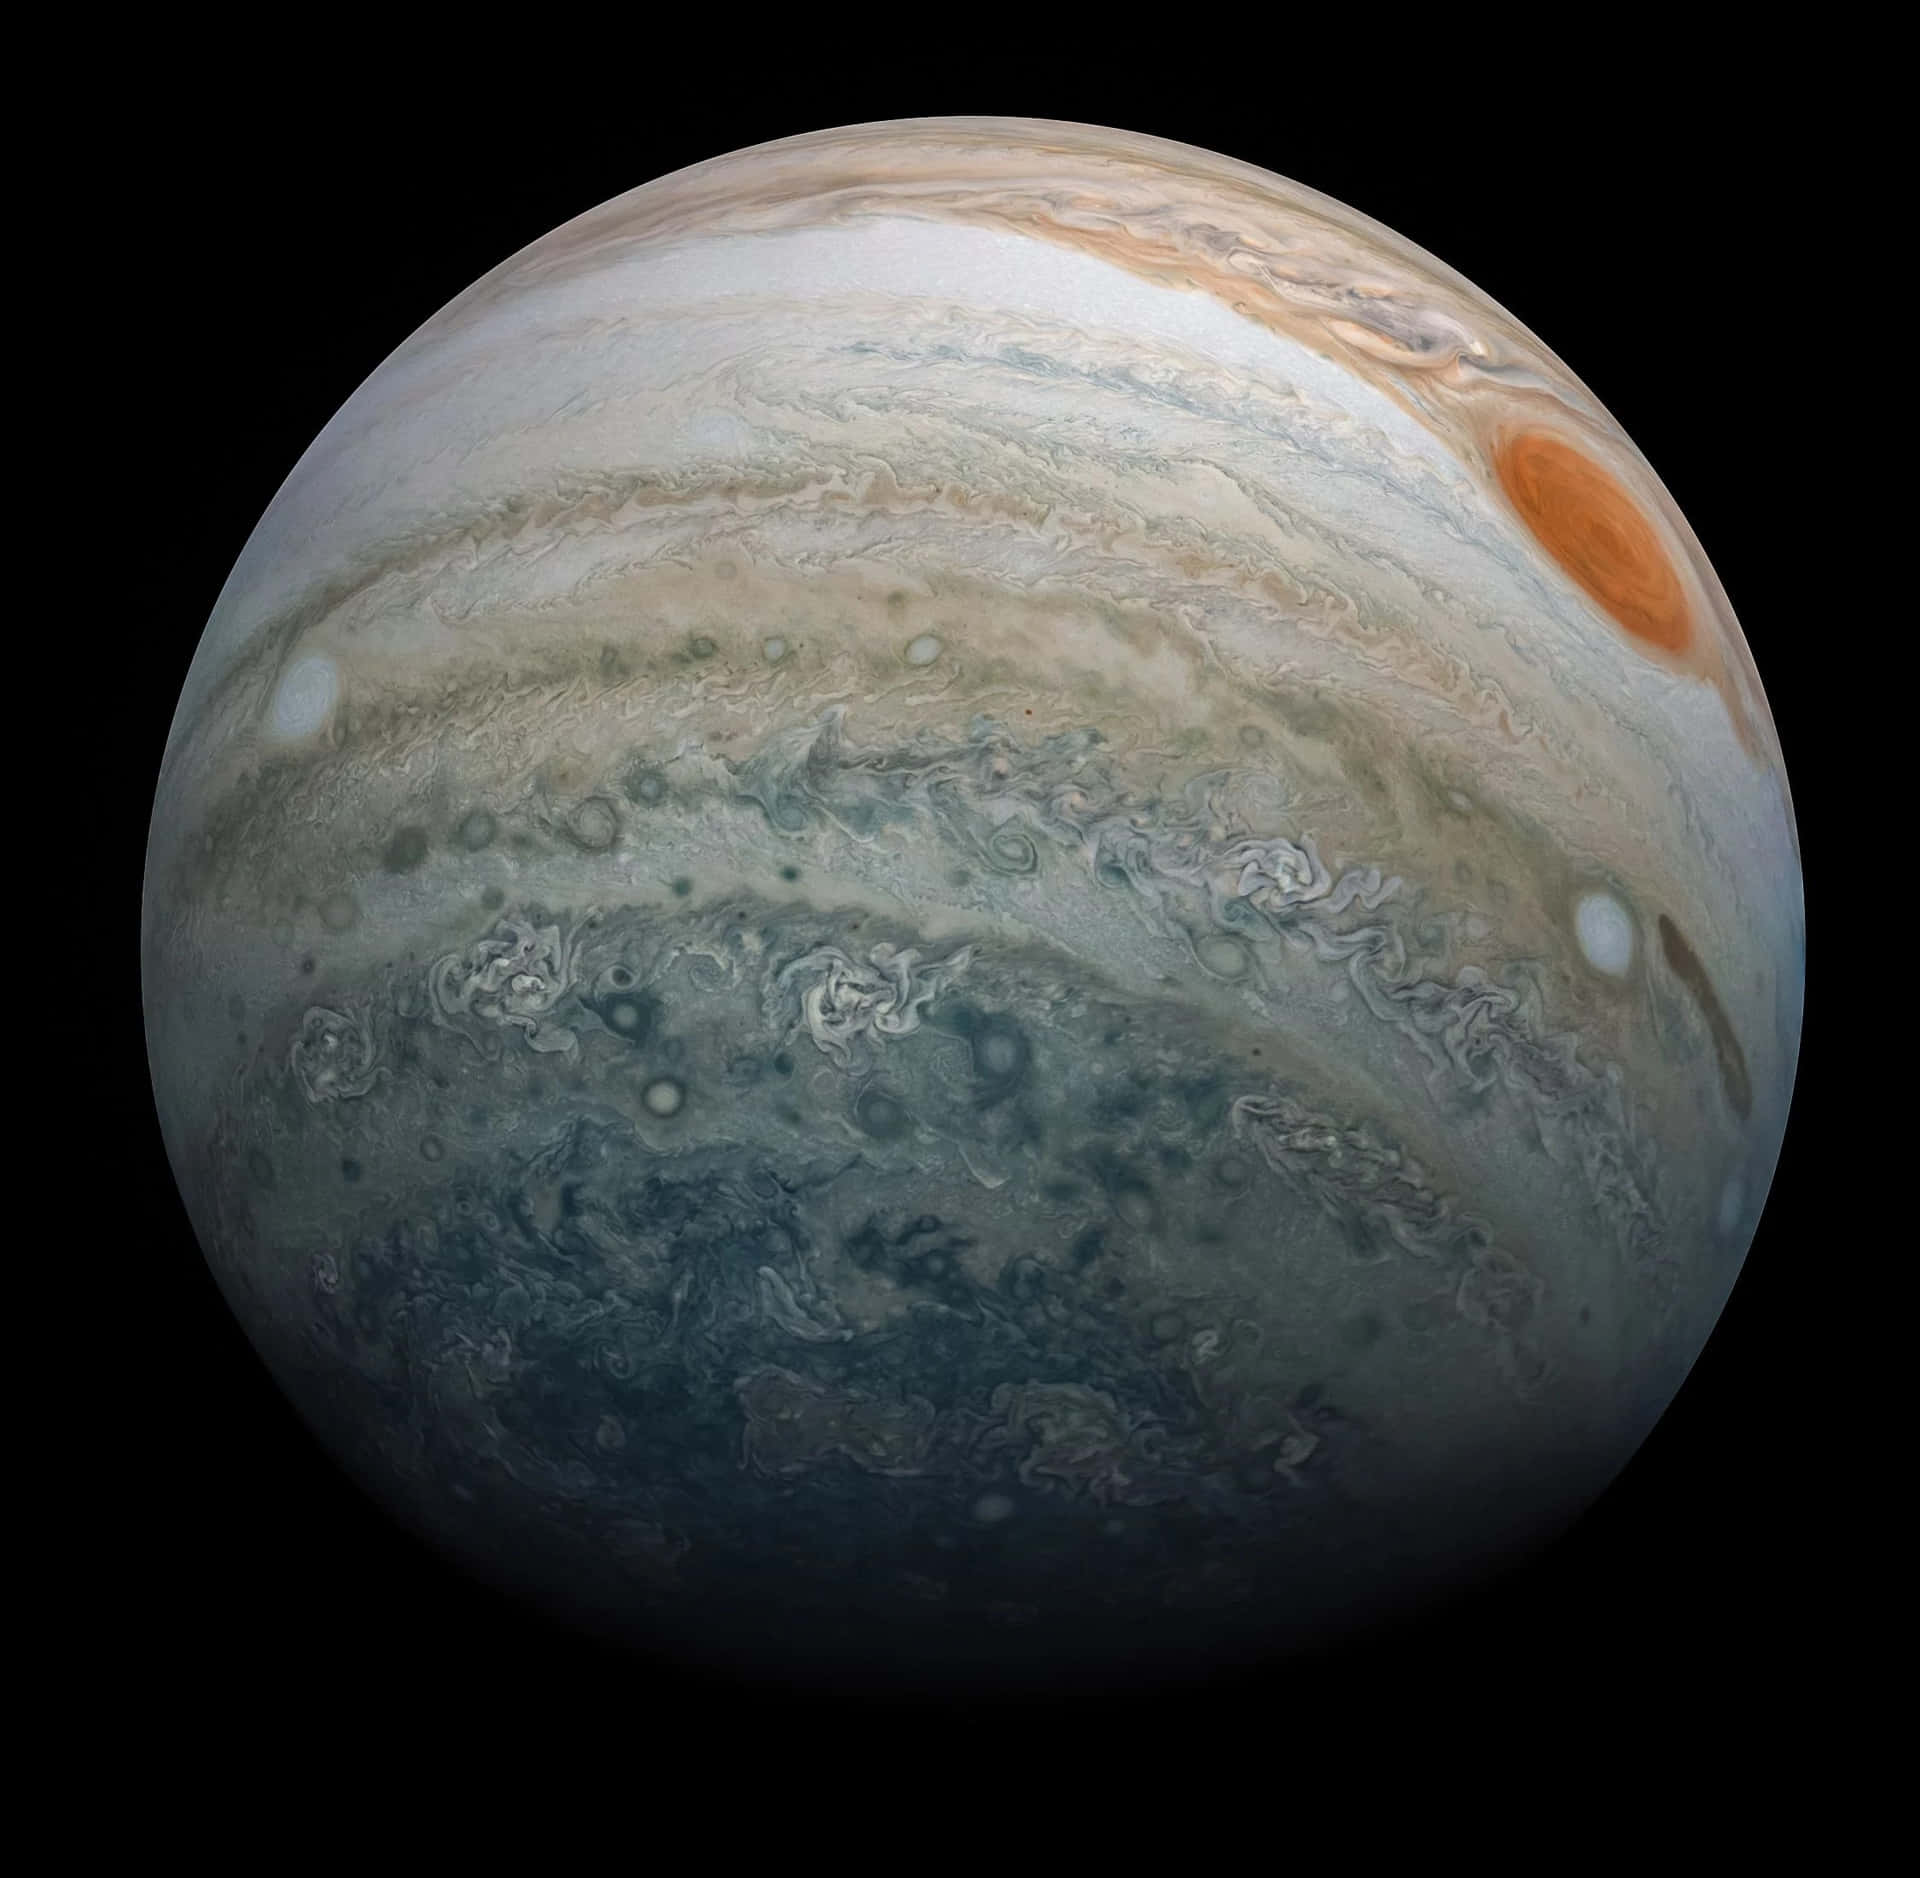 Jupiterwird Auf Diesem Bild Gezeigt.